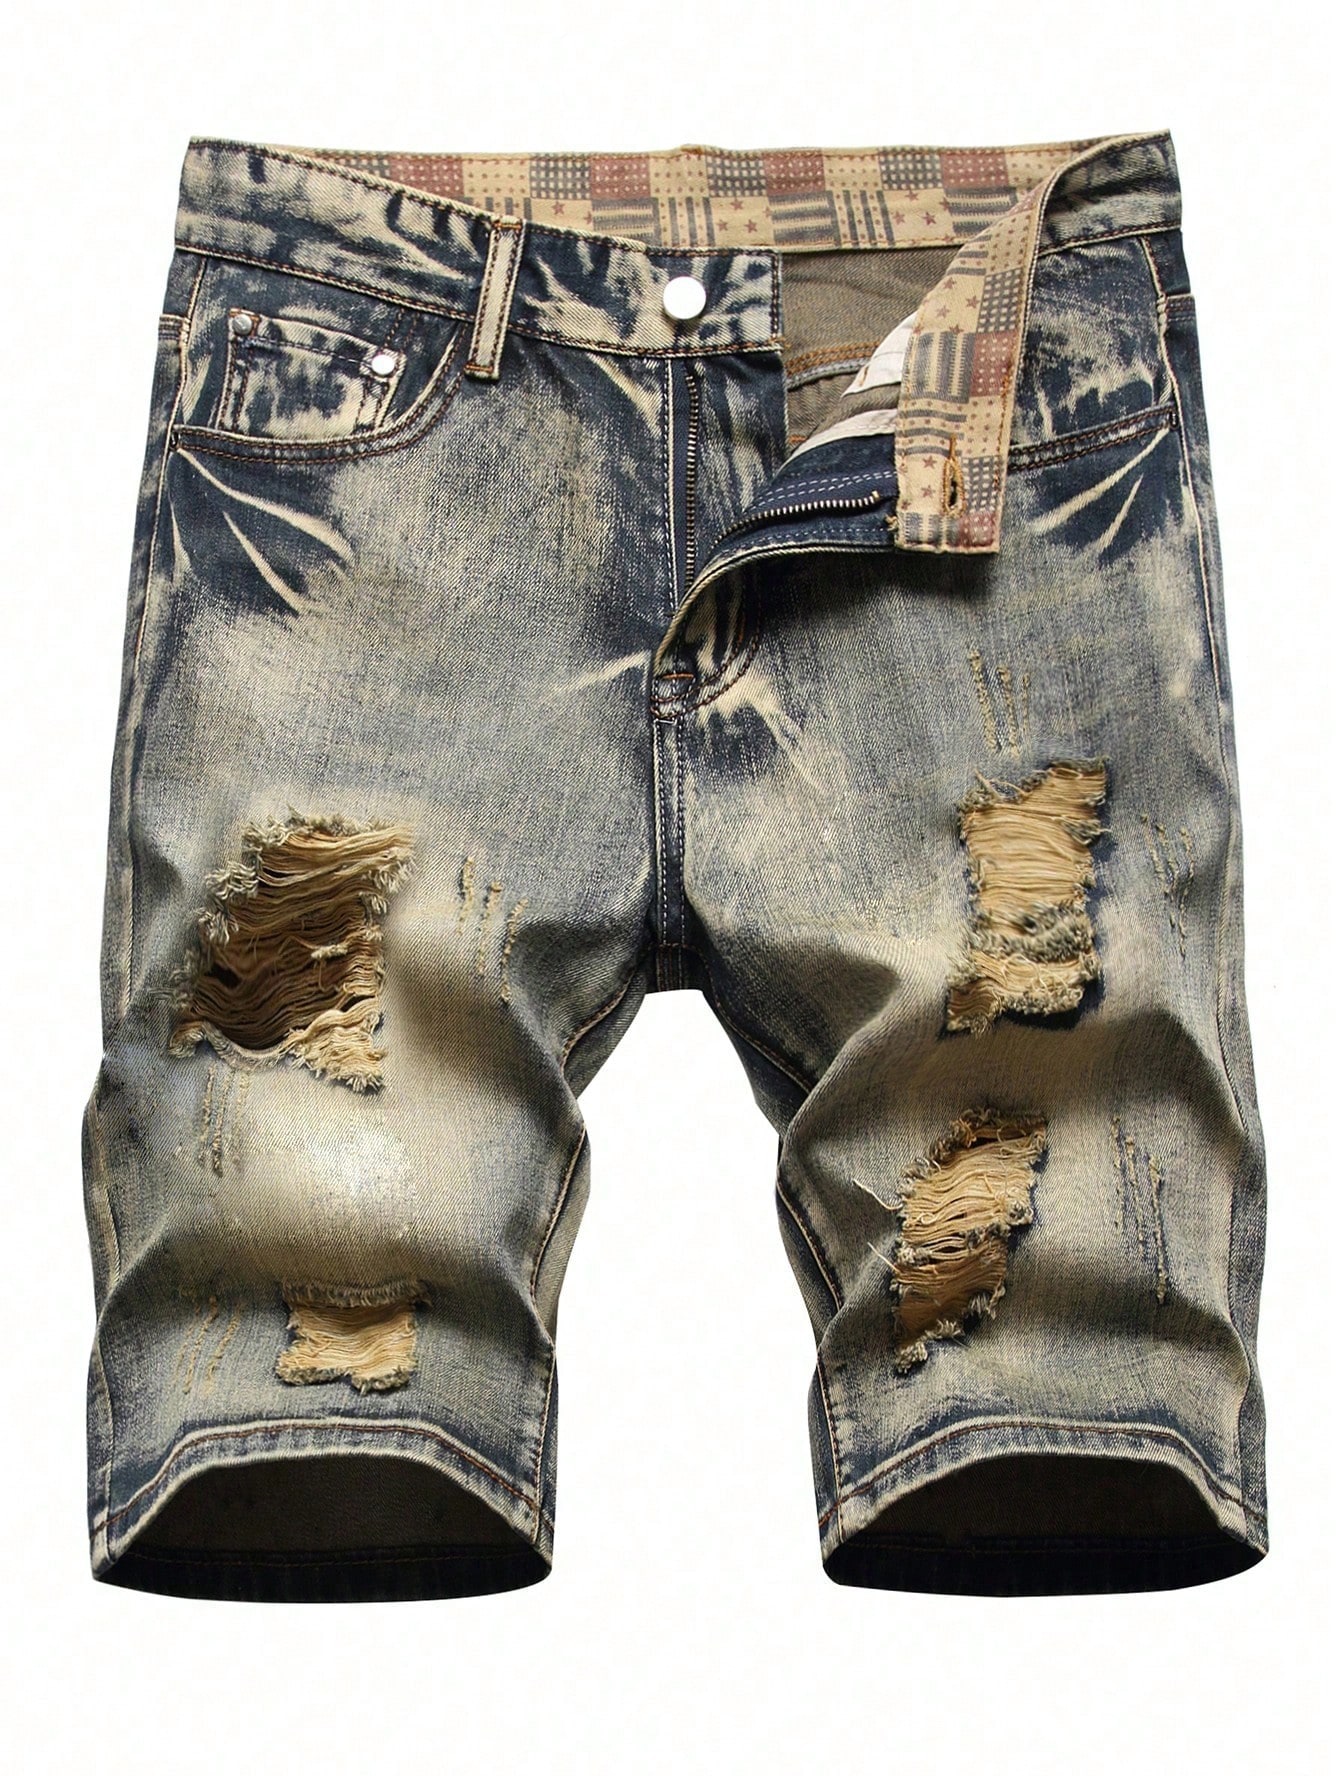 Мужские джинсовые шорты с потертостями, средняя стирка фото